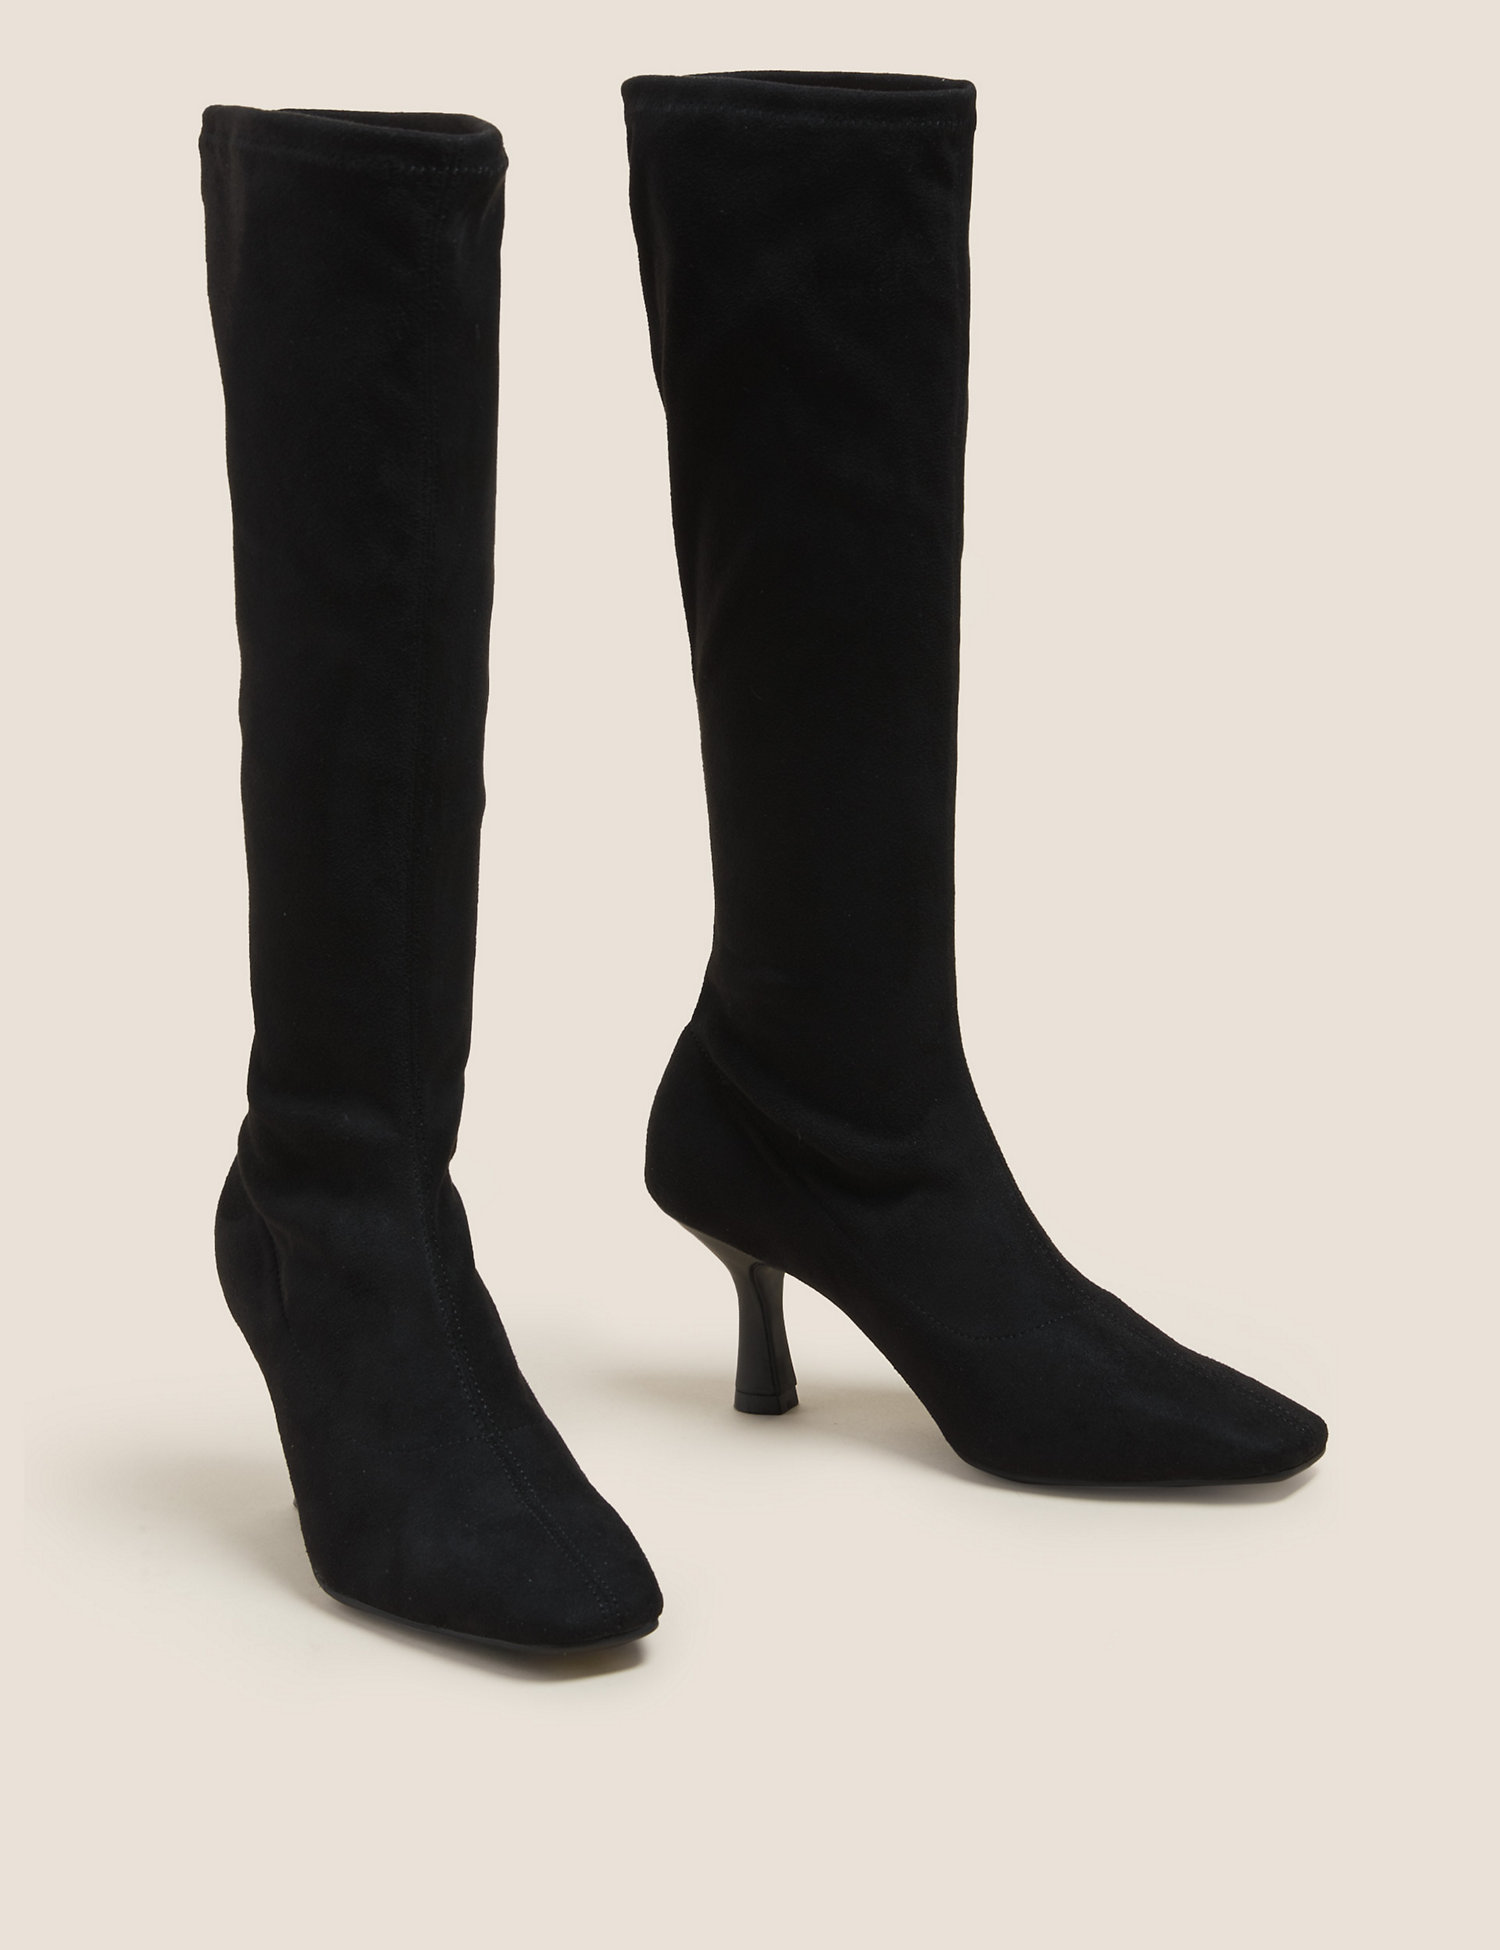 Кендалл Дженнер’ «Весеннее сочетание пальто и обуви — это такой Лондон» /></p>
<p> Коллекция M&S Сапоги до колен с квадратным носком на шпильке £50 </p>
<p class=